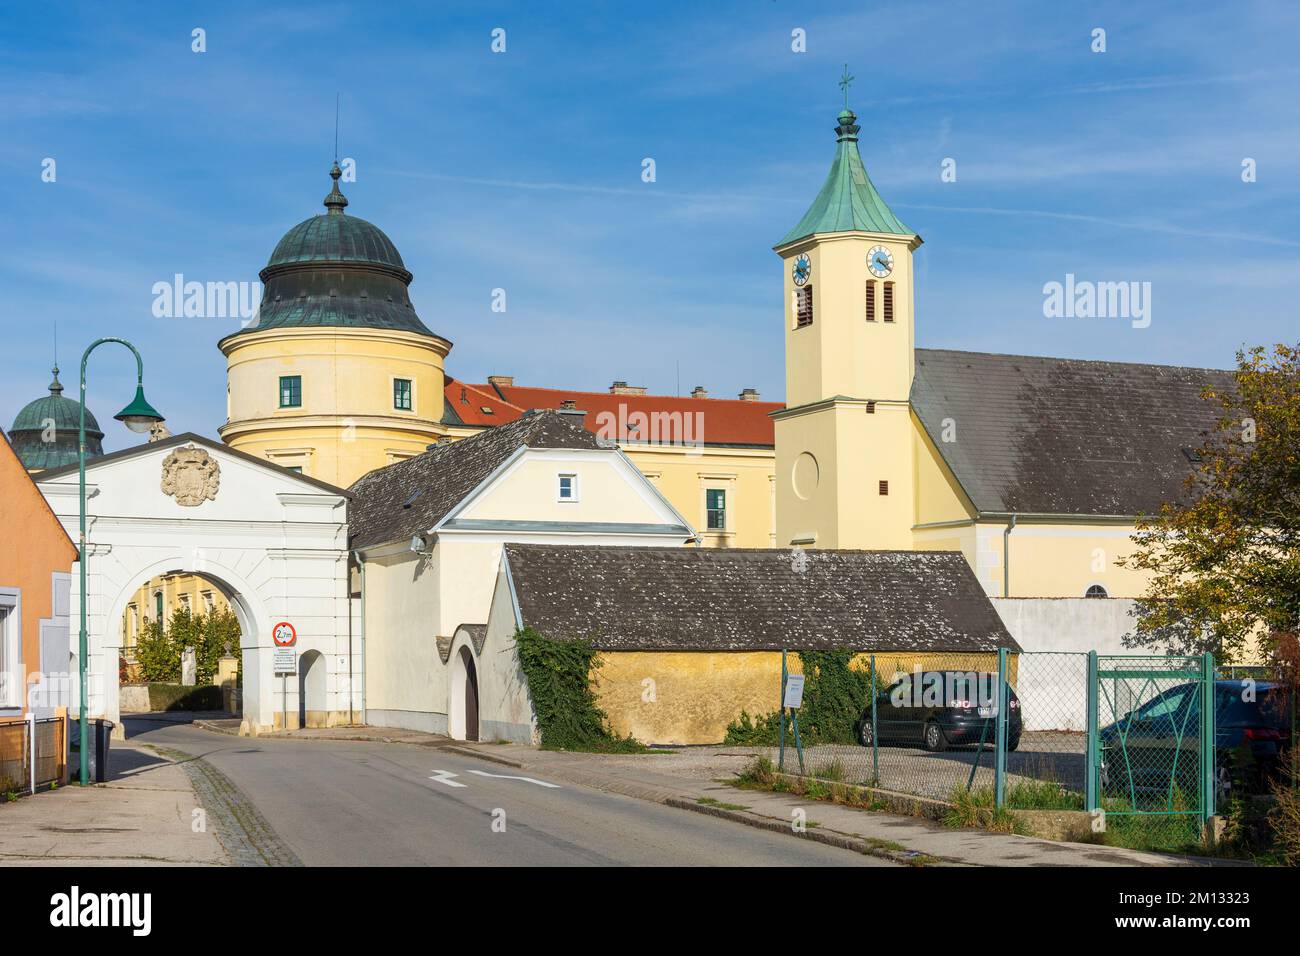 Judenau-Baumgarten, Schloss Judenau Castle and church in Wienerwald, Vienna Woods, Lower Austria, Austria Stock Photo